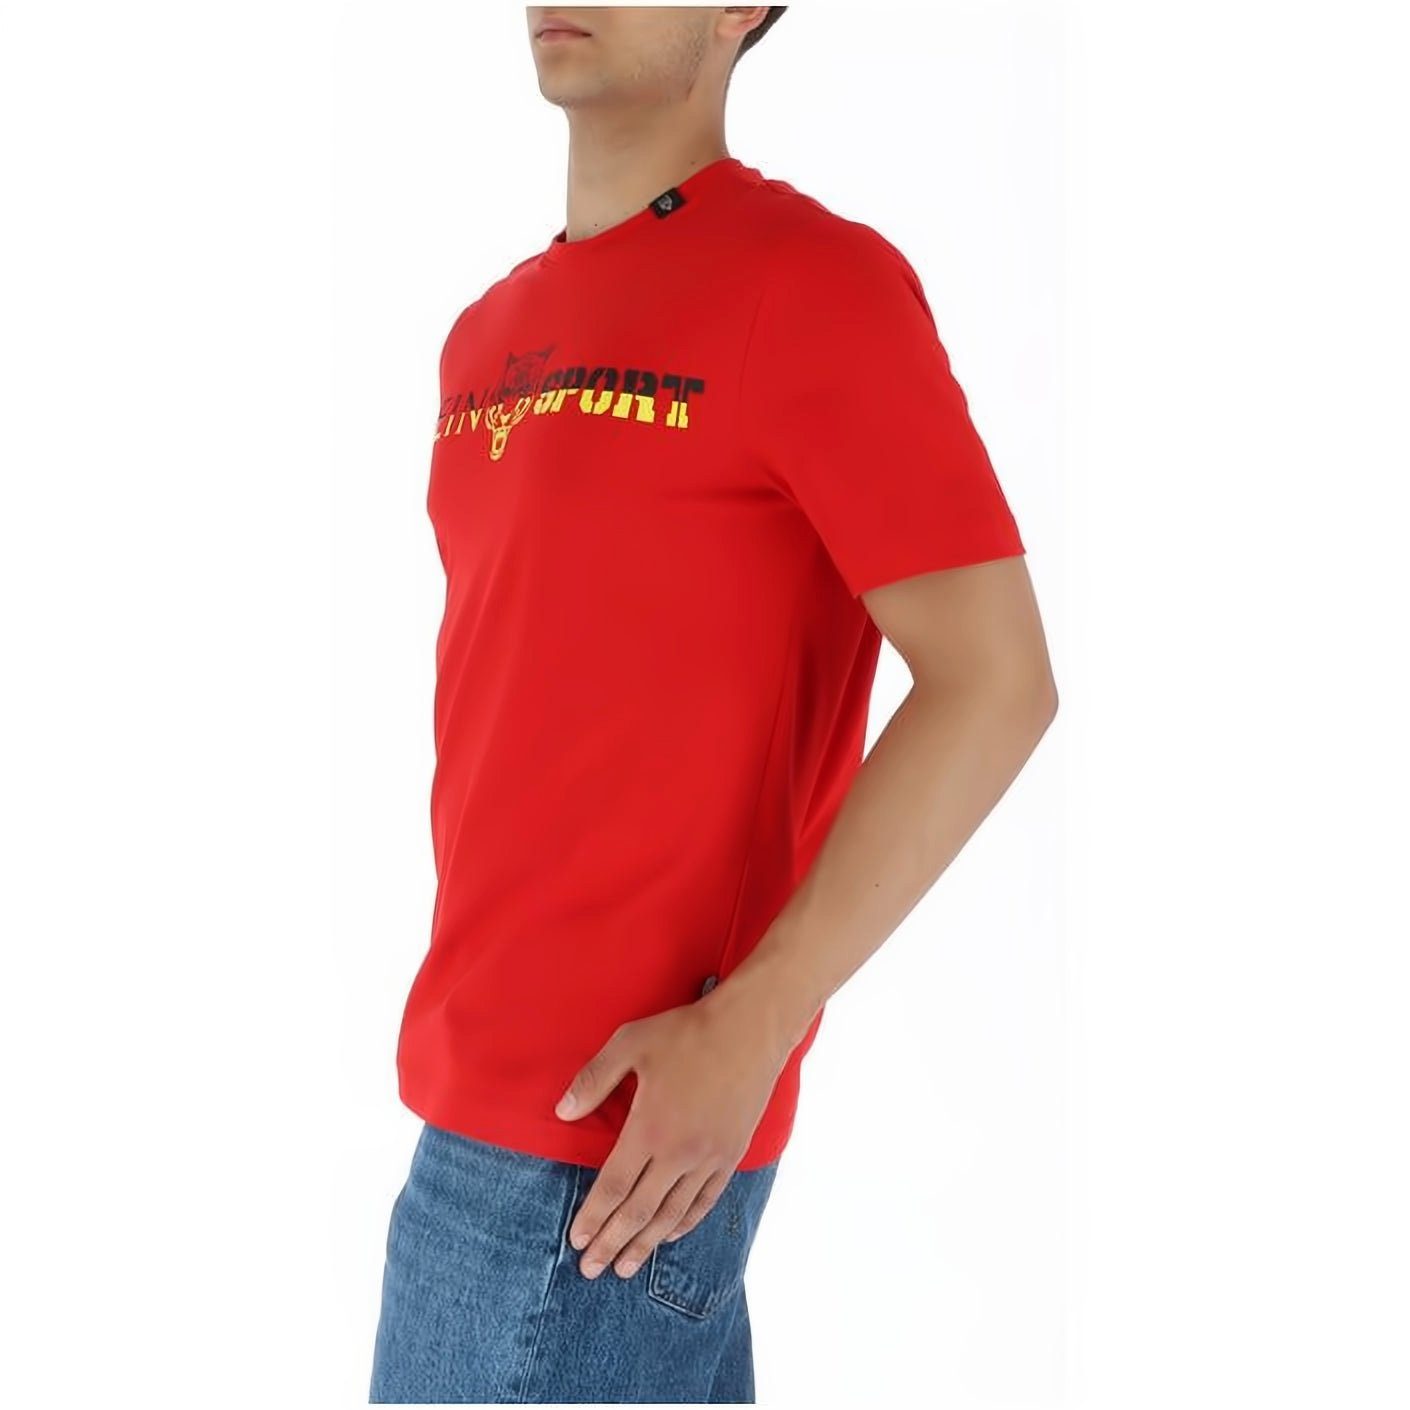 PLEIN SPORT T-Shirt ROUND NECK Look, Stylischer hoher Farbauswahl Tragekomfort, vielfältige